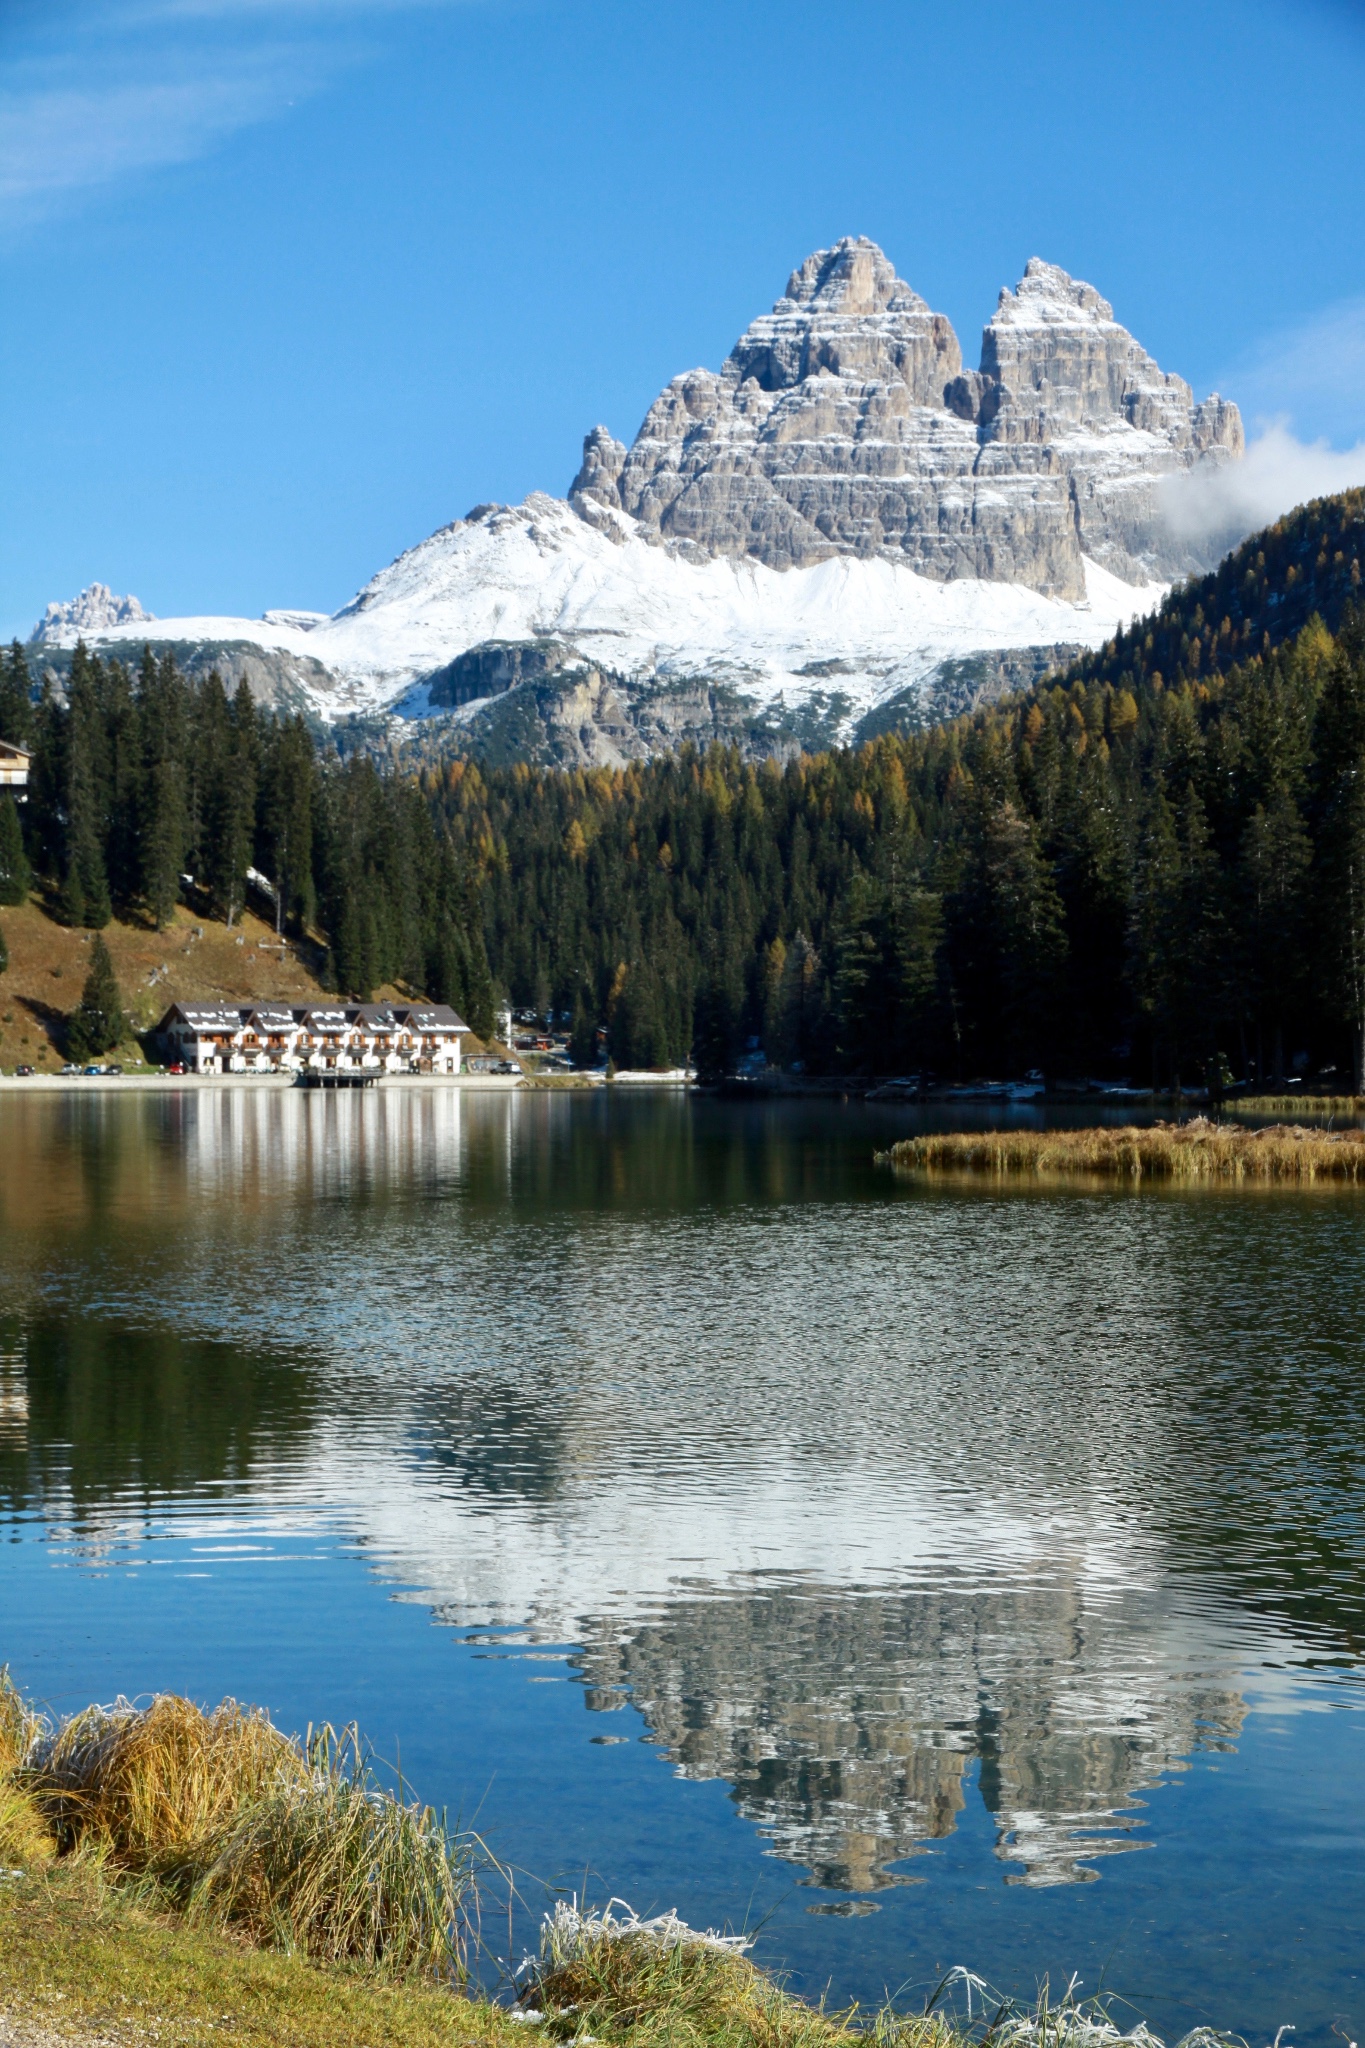 自驾环游意大利(四) 阿尔卑斯山 多洛米蒂风景区